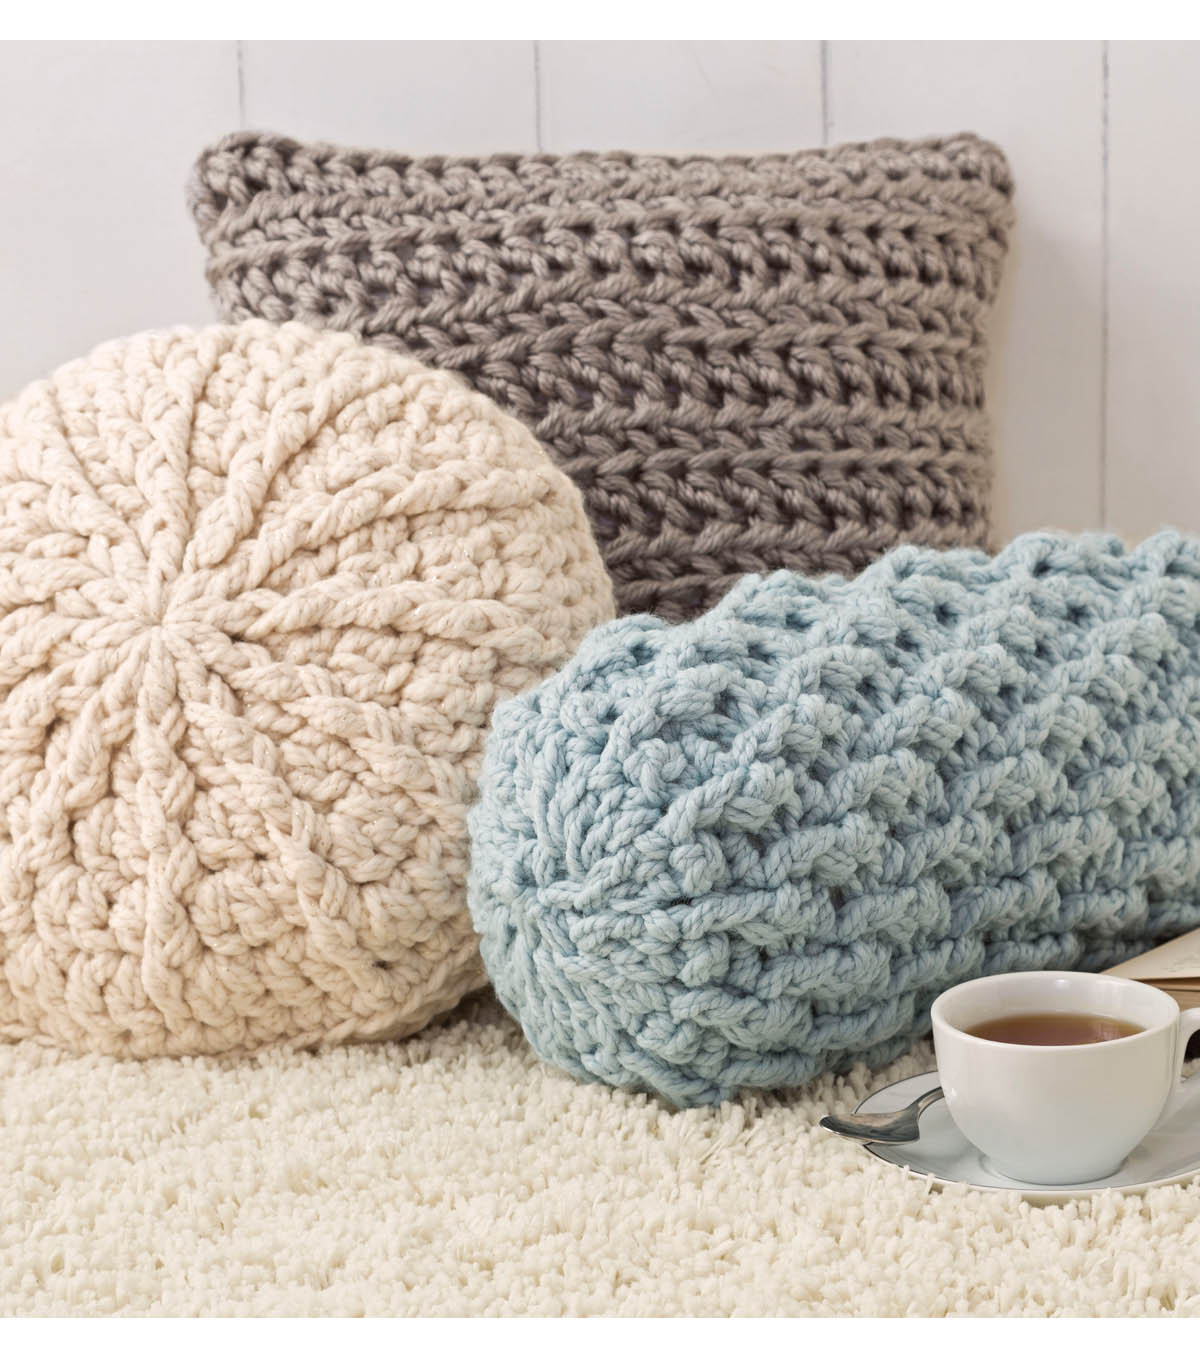 Free Crochet Pillow Patterns Cozy Crochet Pillows Joann